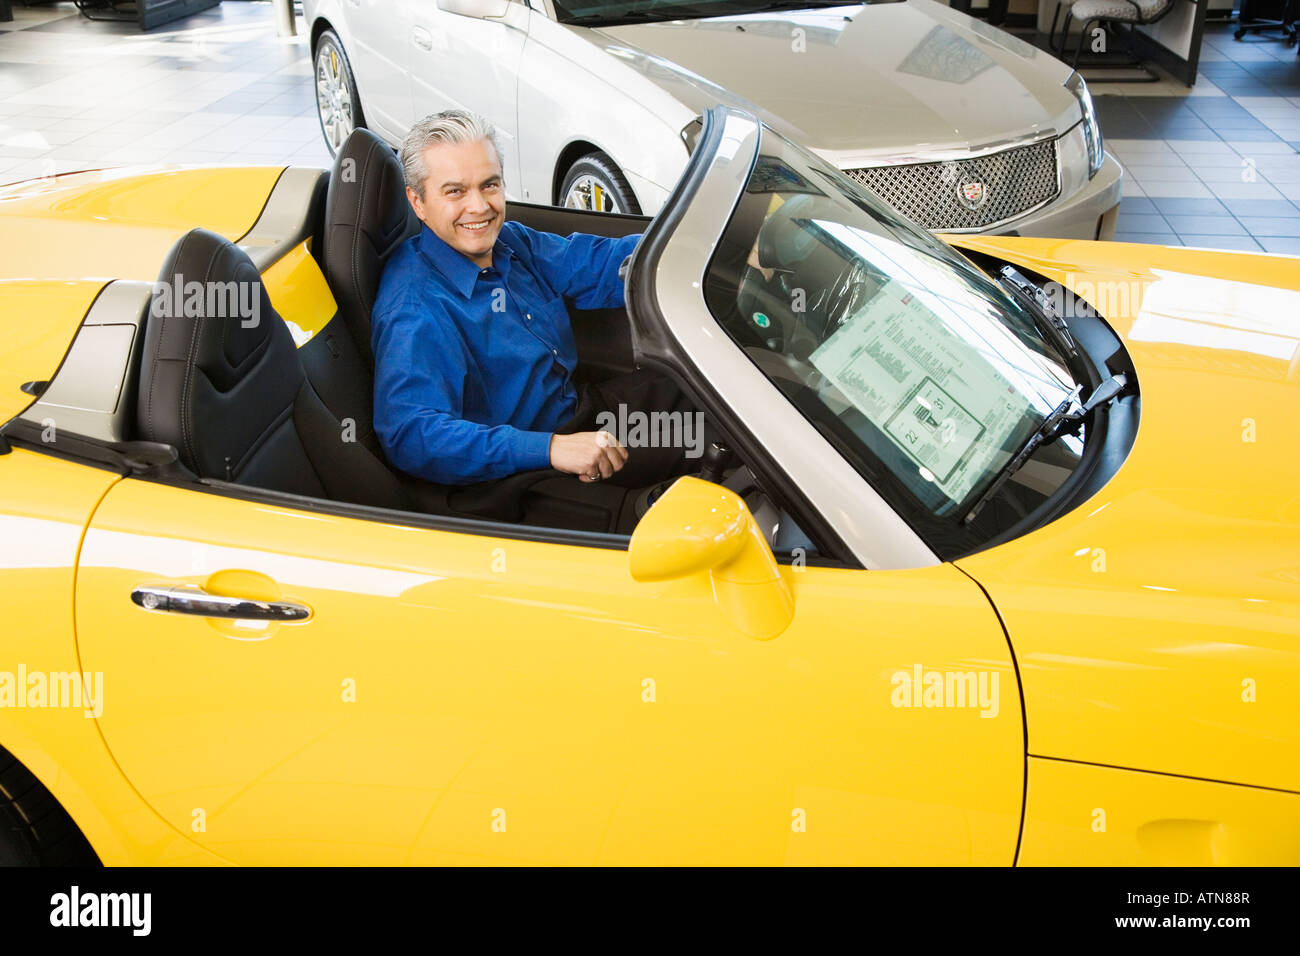 Vendeur de voiture hispaniques sitting in new car Banque D'Images